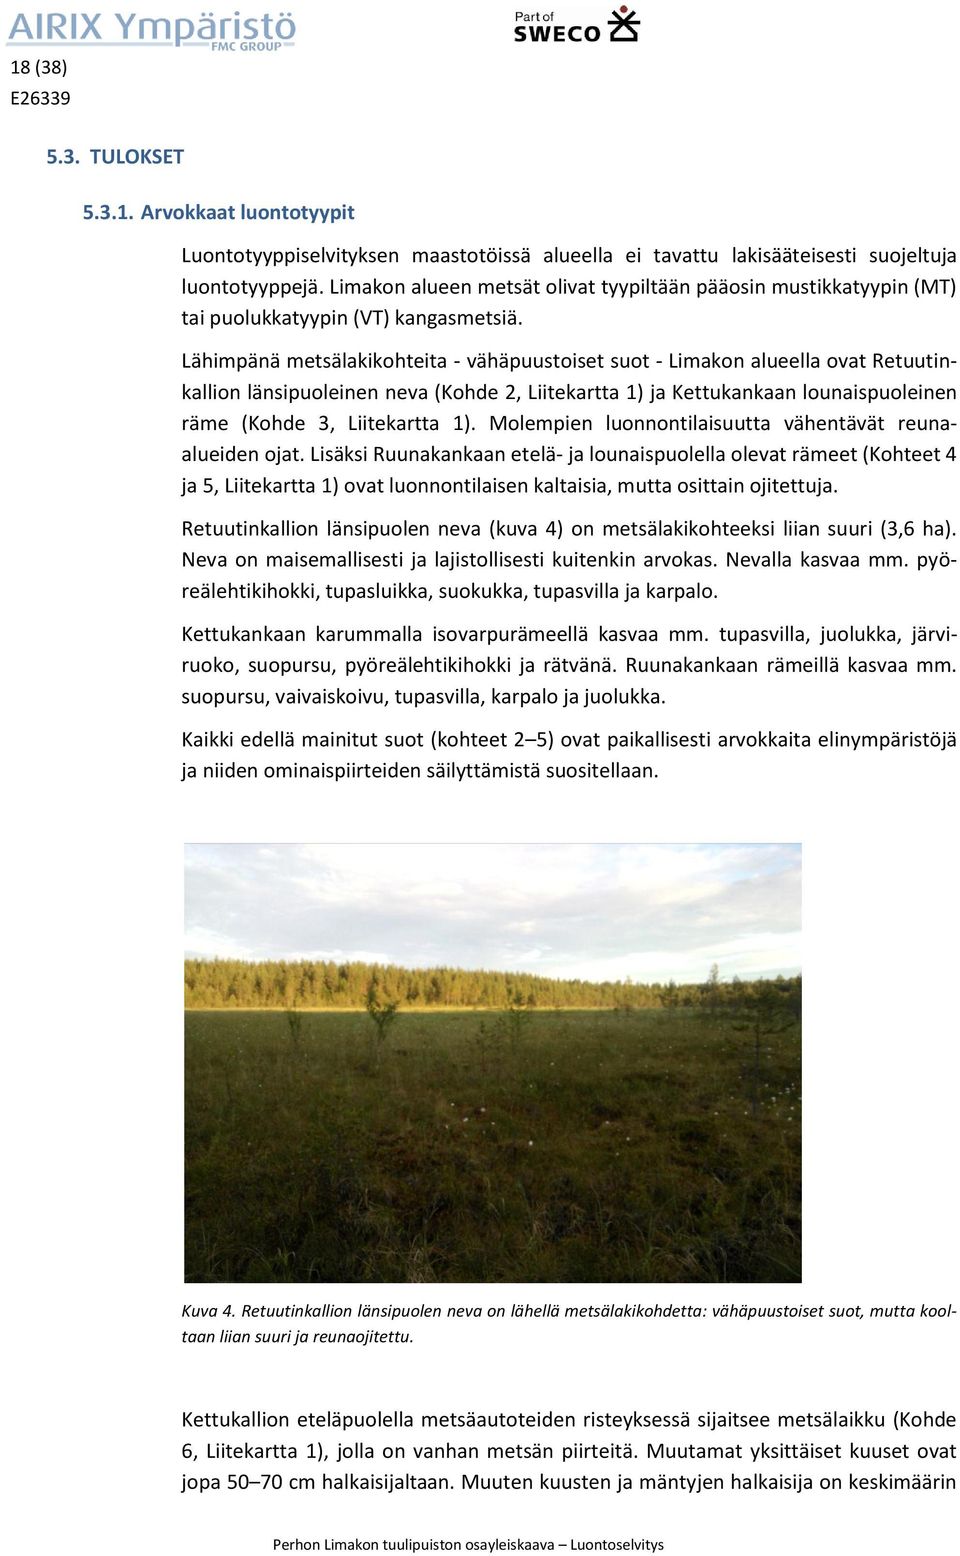 Lähimpänä metsälakikohteita - vähäpuustoiset suot - Limakon alueella ovat Retuutinkallion länsipuoleinen neva (Kohde 2, Liitekartta 1) ja Kettukankaan lounaispuoleinen räme (Kohde 3, Liitekartta 1).